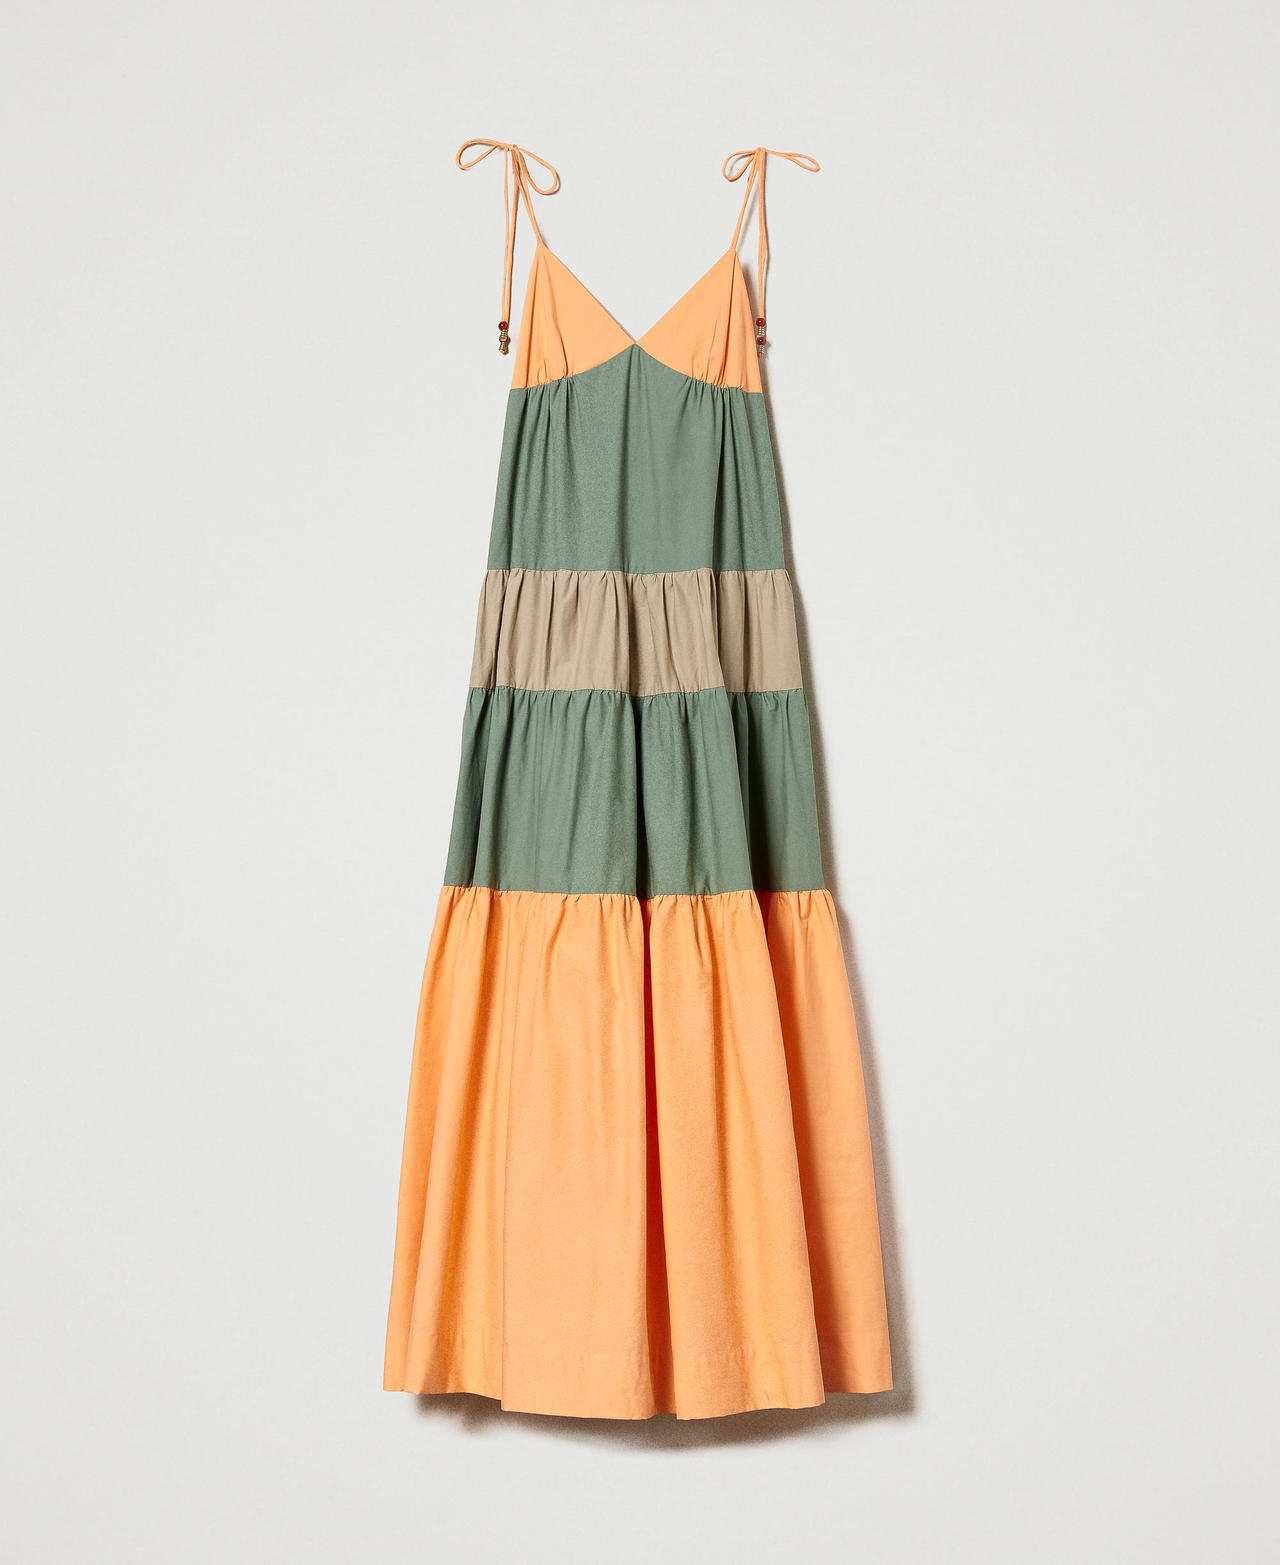 Robe longue avec volants bicolores Multicolore Orange « Cantaloup »/Vert « Turtle Green »/Beige « Carabbean » Femme 231LM2HBB-0S